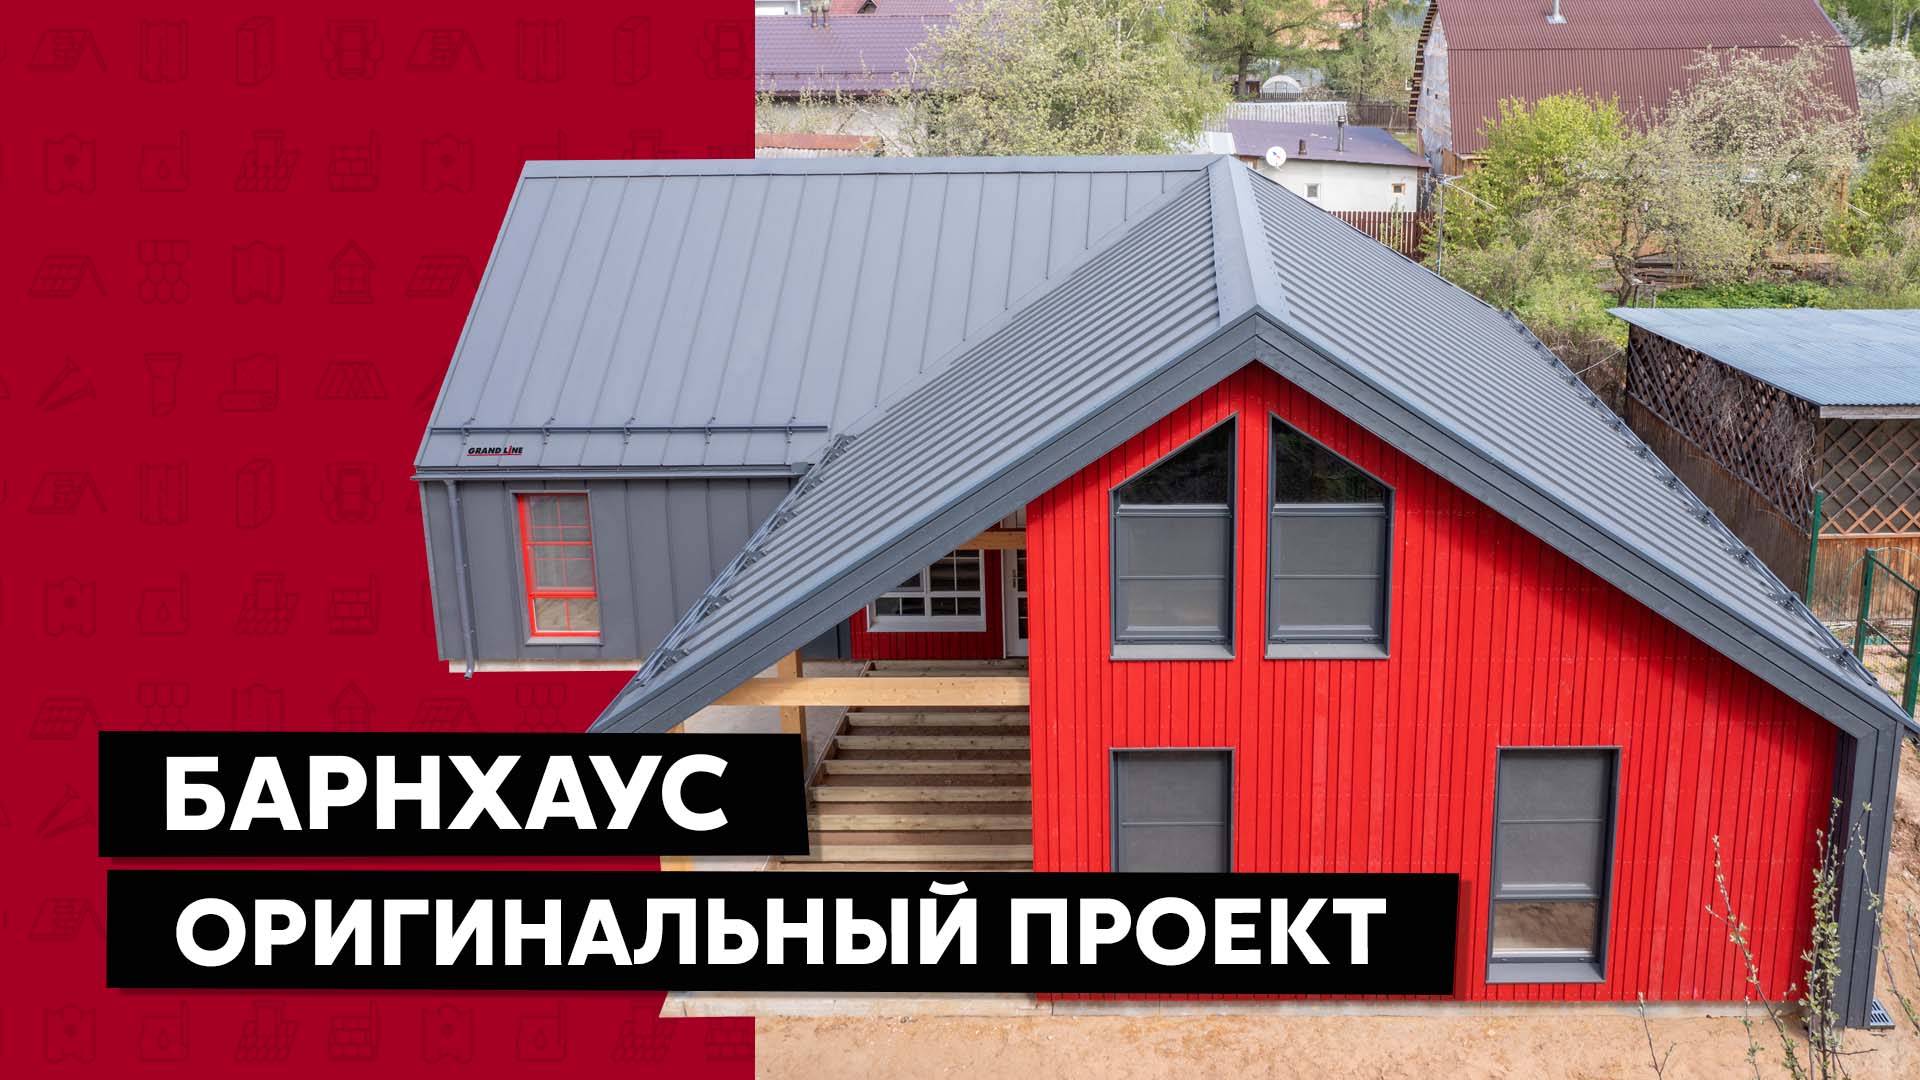 Красный Барнхаус / Оригинальный проект дома / Кликфальц PRO